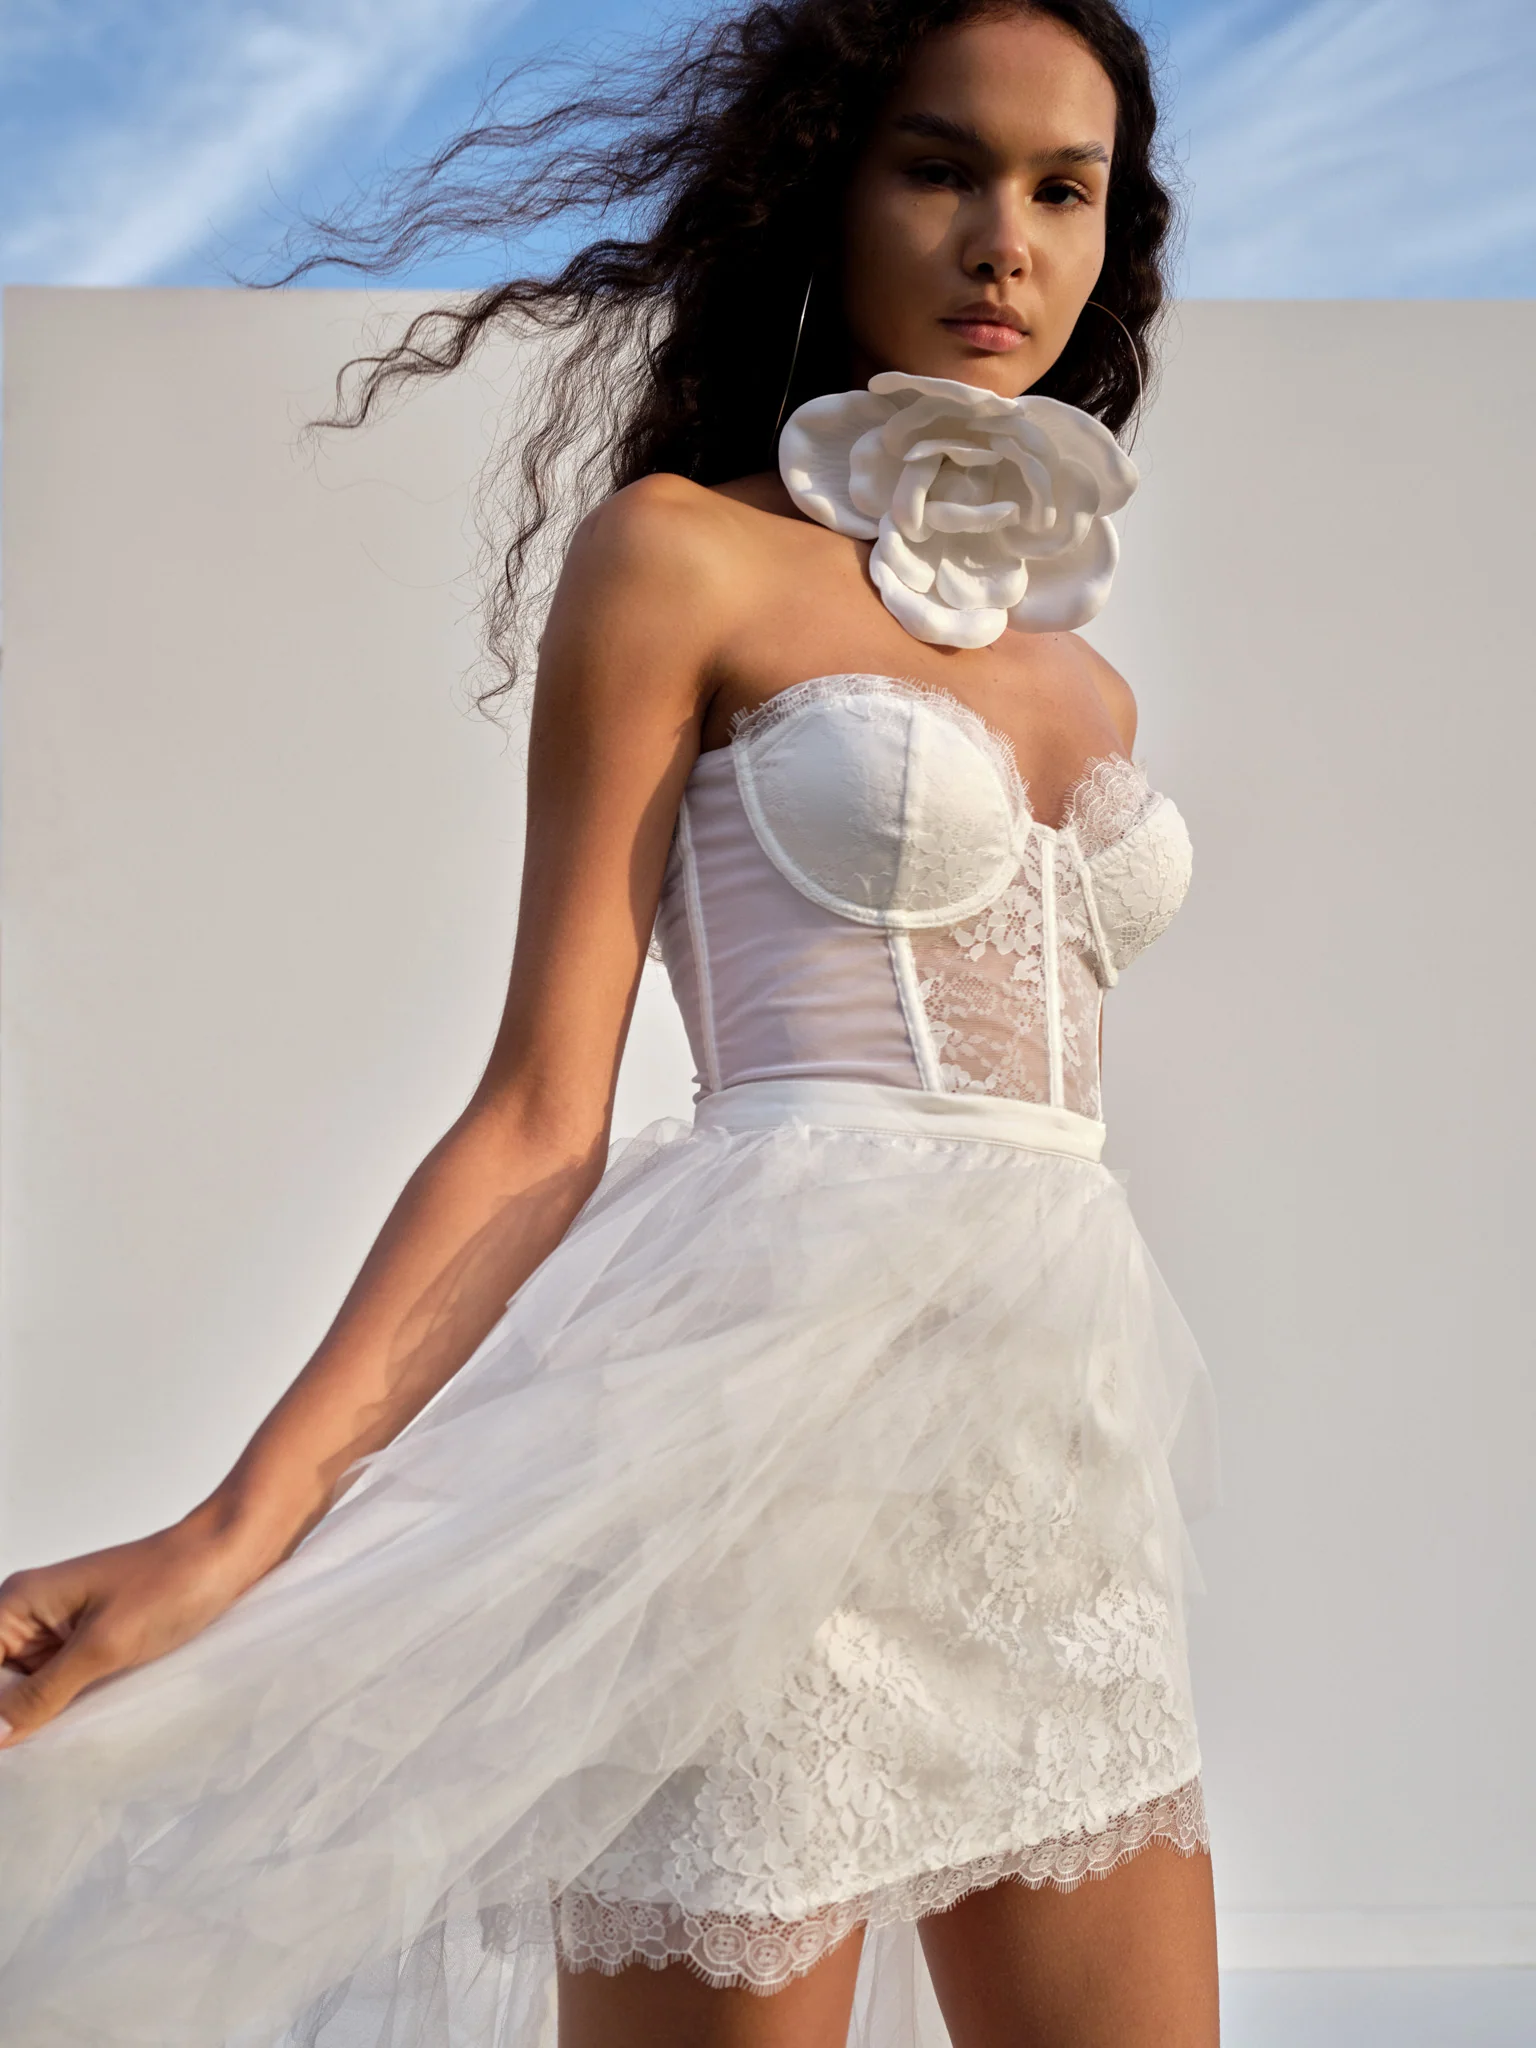 Biele prsatejšie šaty: Elegancia, všestrannosť a tipy na styling